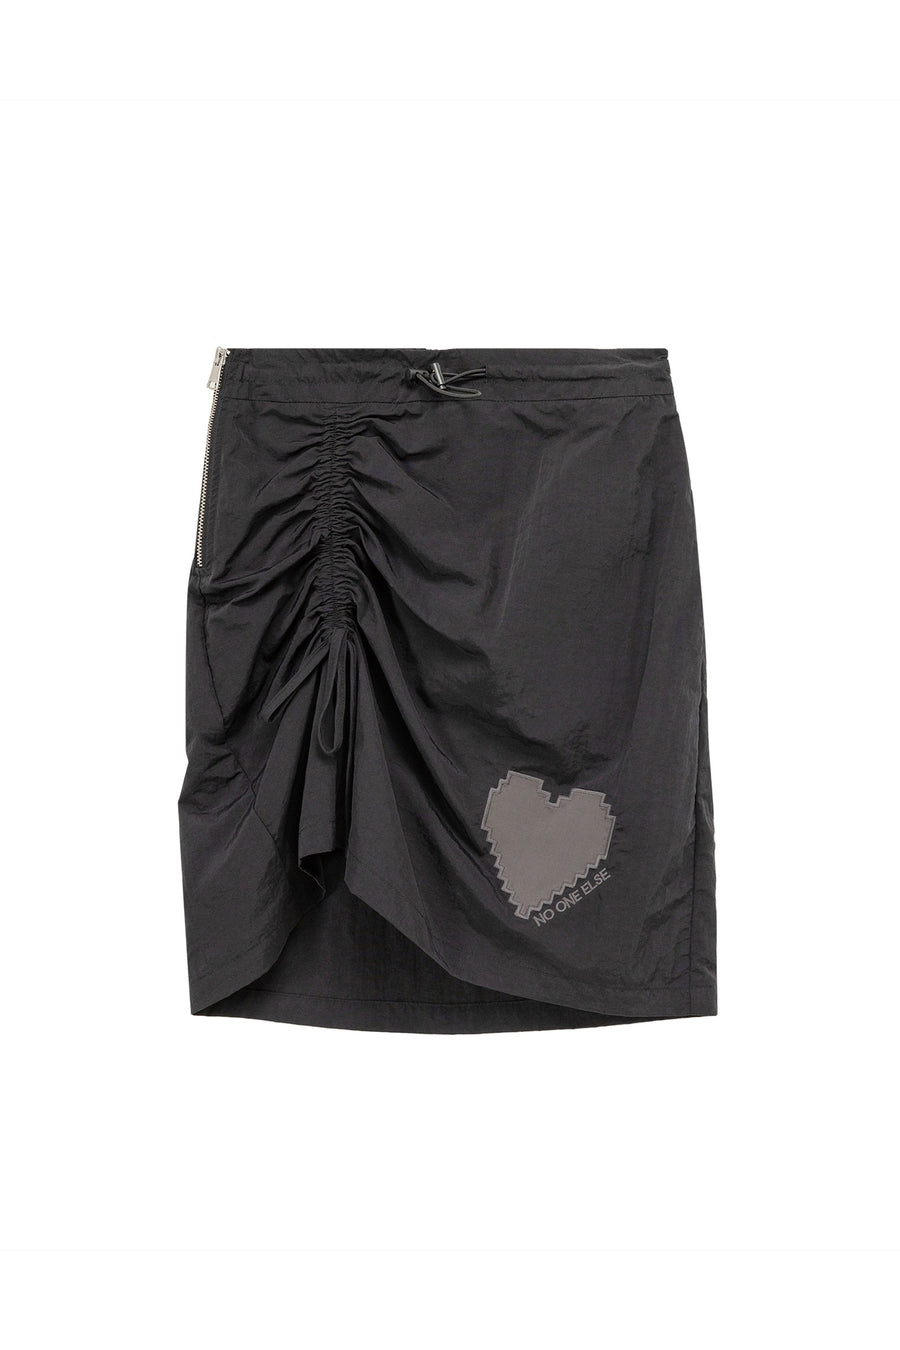 CHUU High Waist Side String Heart Skirt